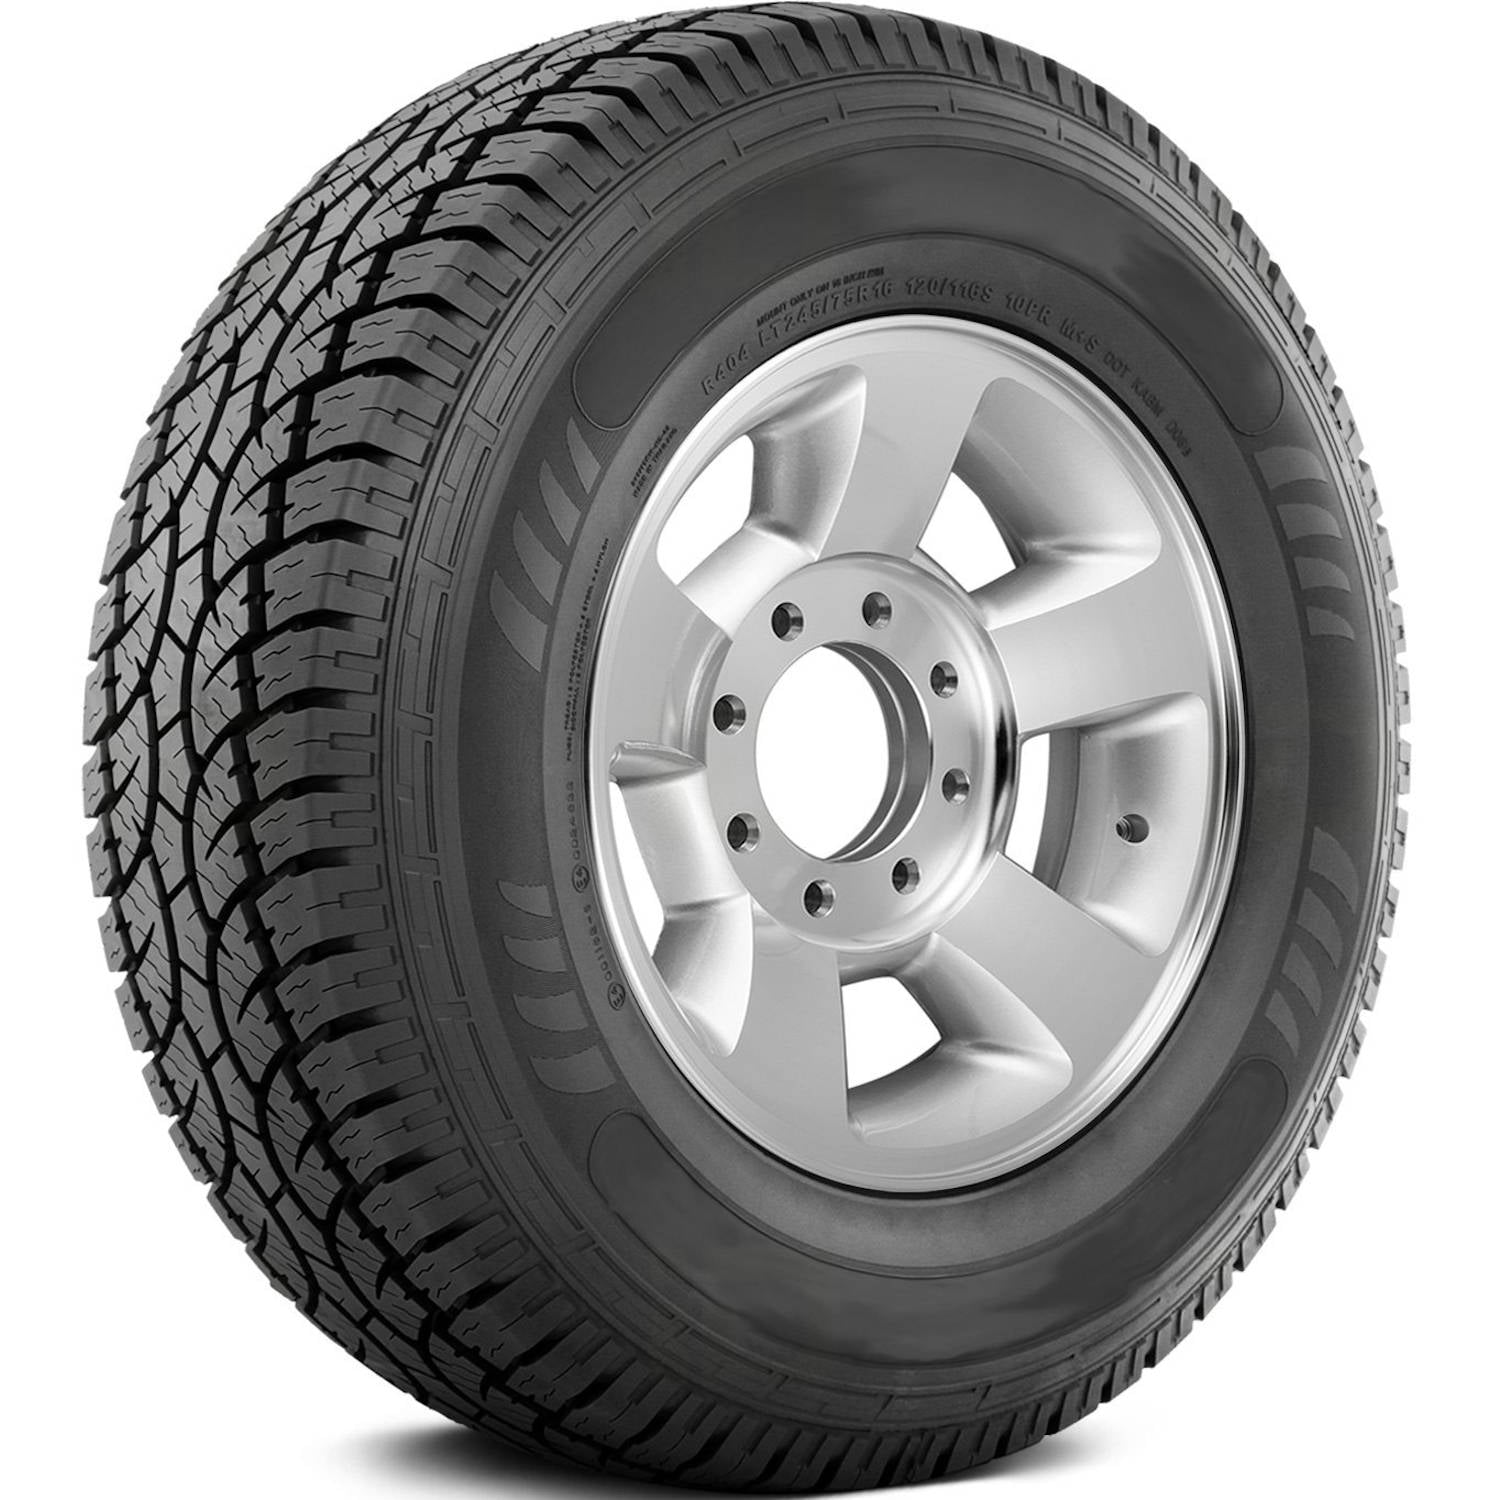 AMERICUS RUGGED ALL TERRAIN 255/70R16 (30.1X10R 16) Tires